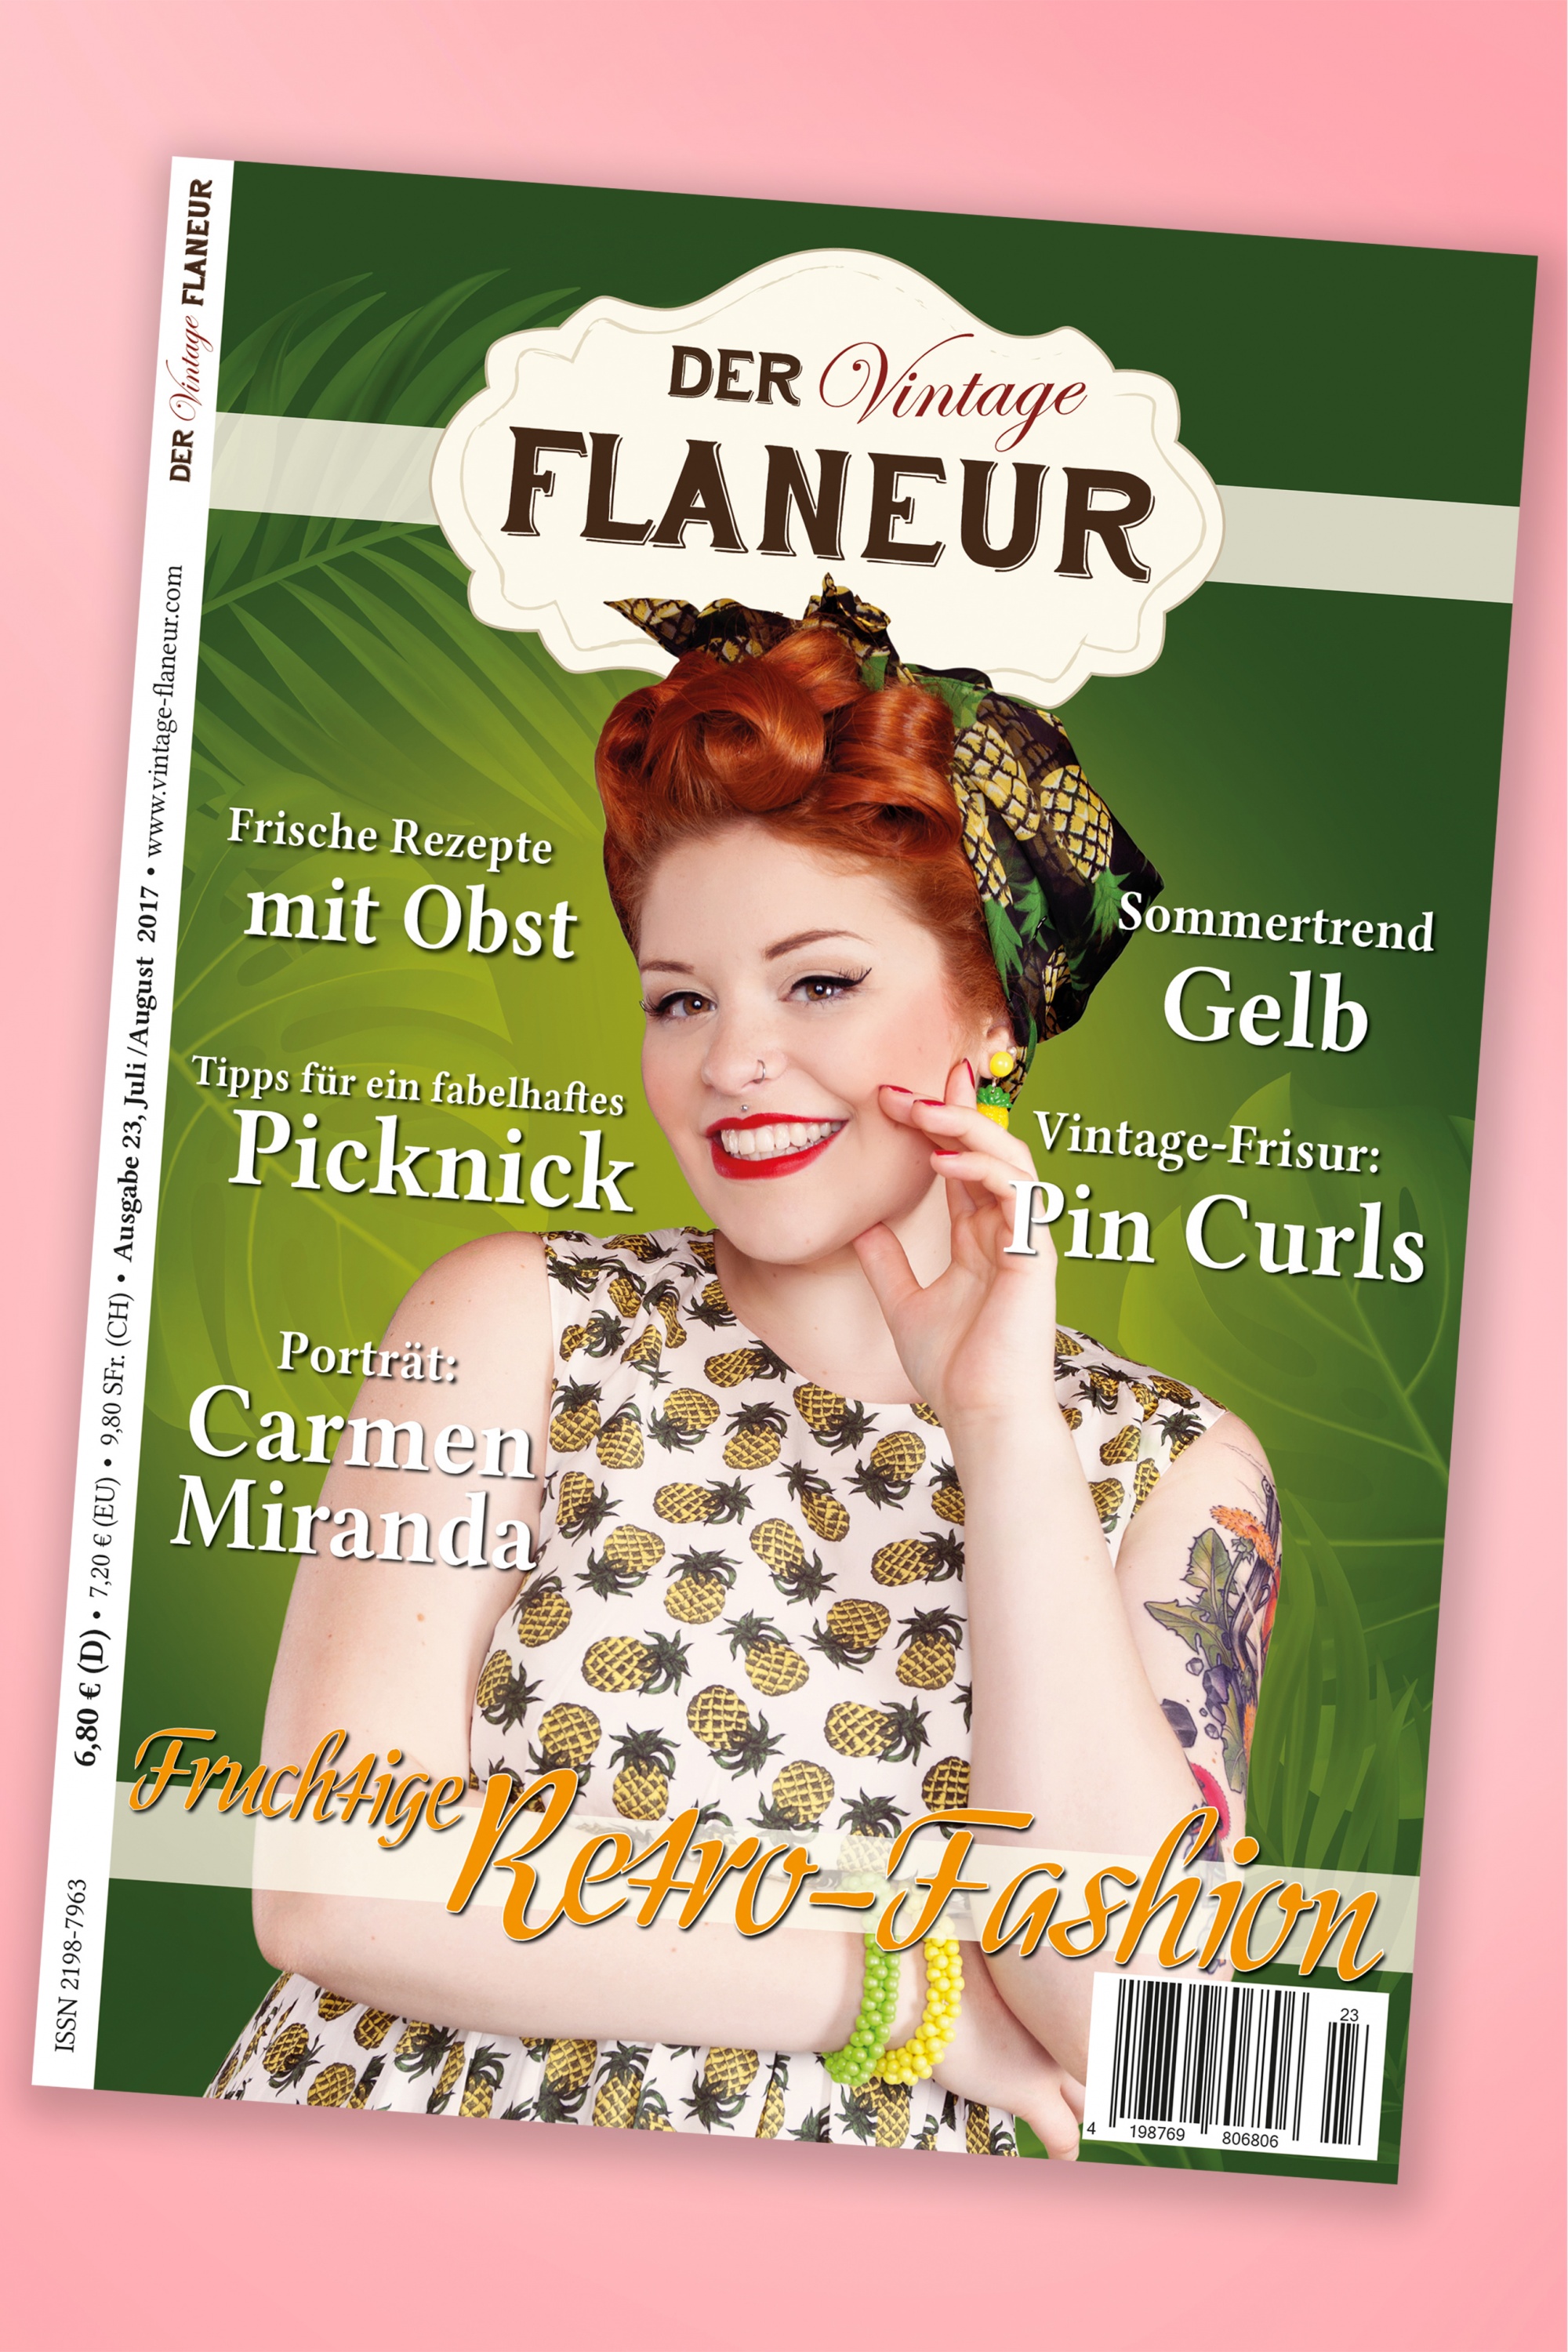 Der Vintage Flaneur - Der Vintage Flaneur Uitgegeven op 23, 2017